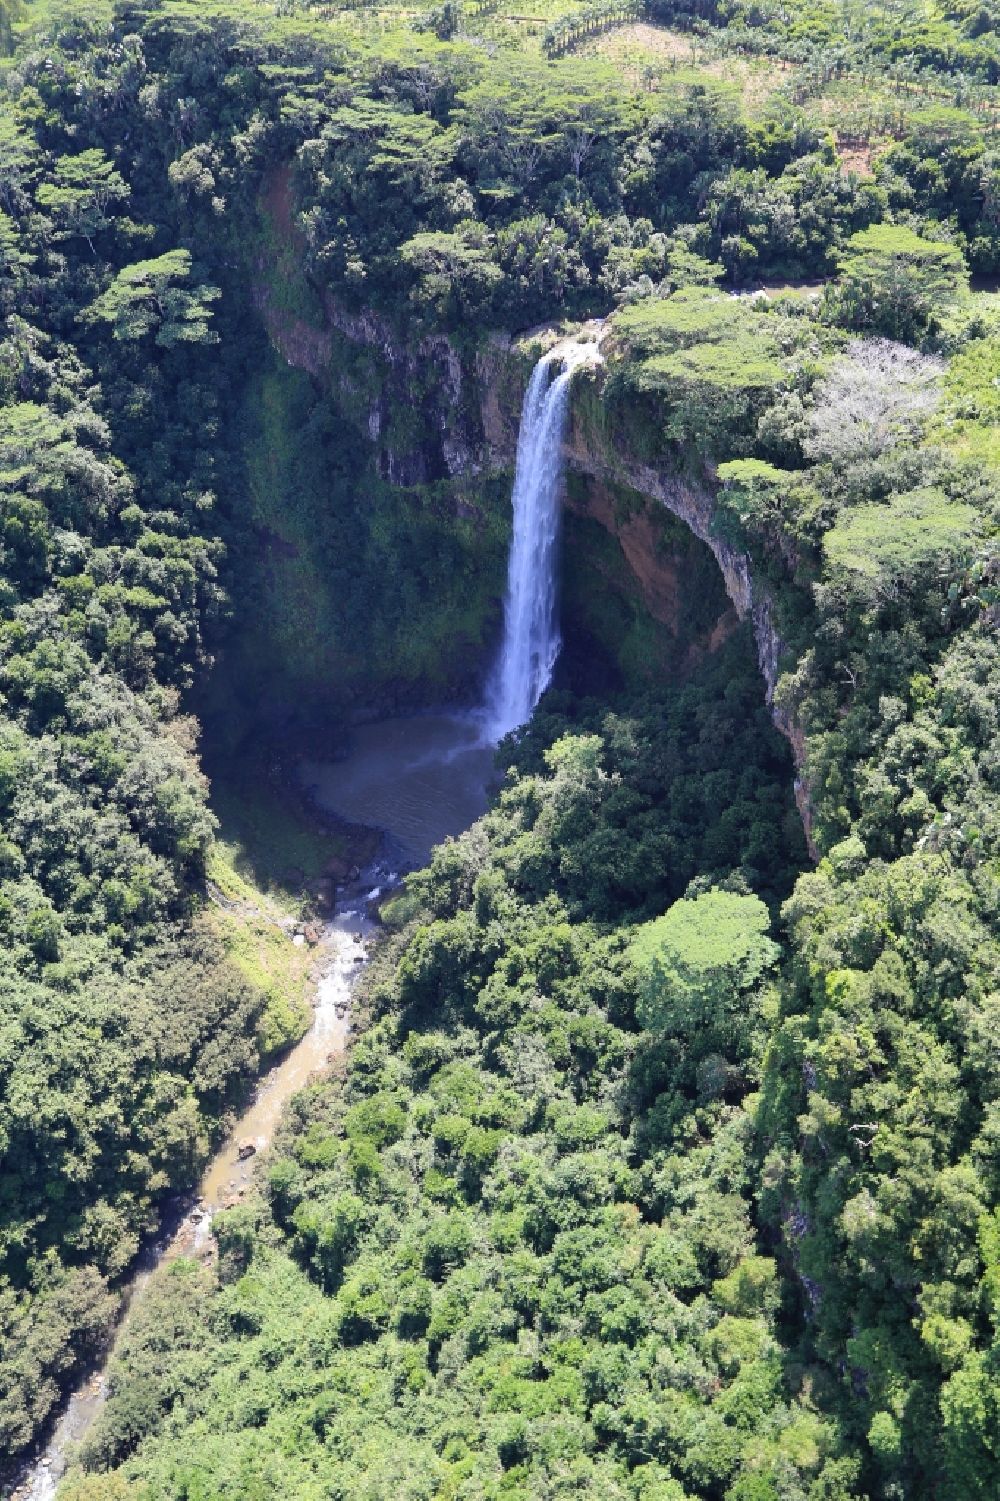 Luftbild Chamarel Waterfall - Hoher Wasserfall von Chamarel auf der Insel Mauritius